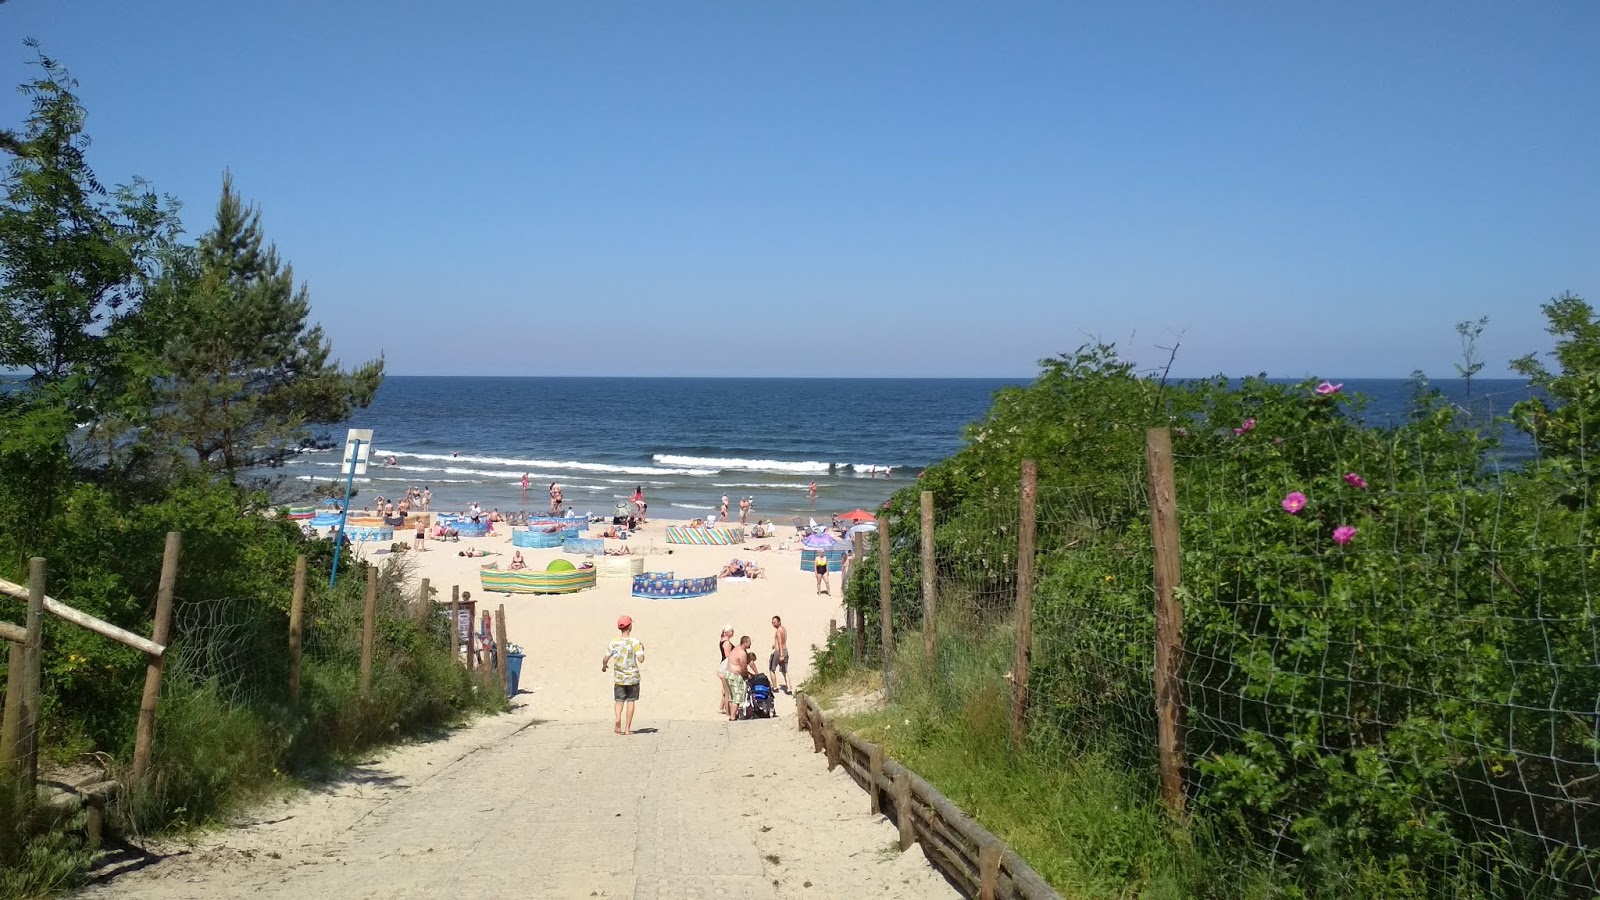 Stegna Morska beach的照片 - 受到放松专家欢迎的热门地点